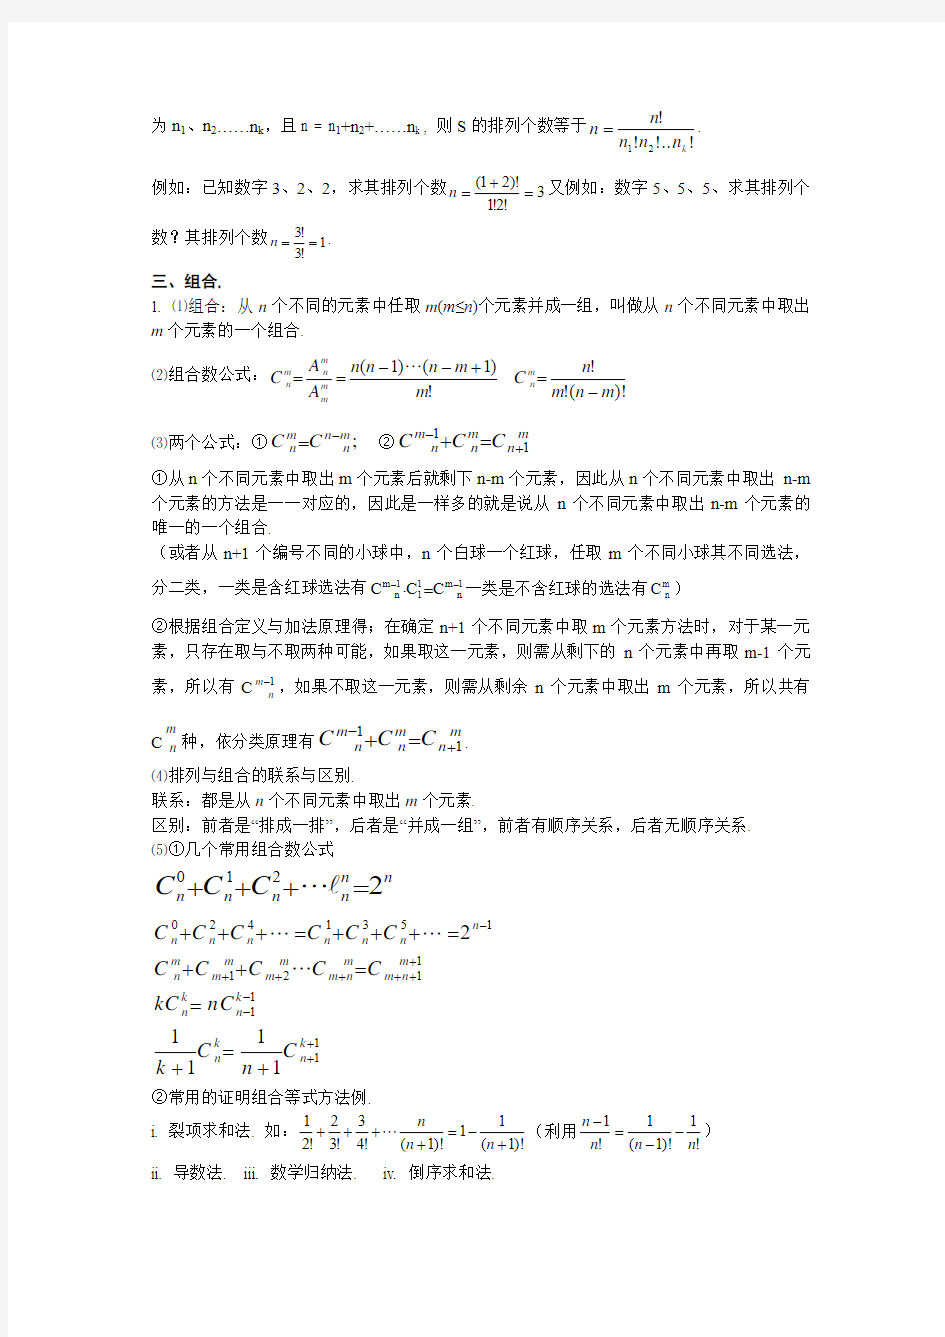 高中数学知识点总结 第十章排列组合和二项式定理